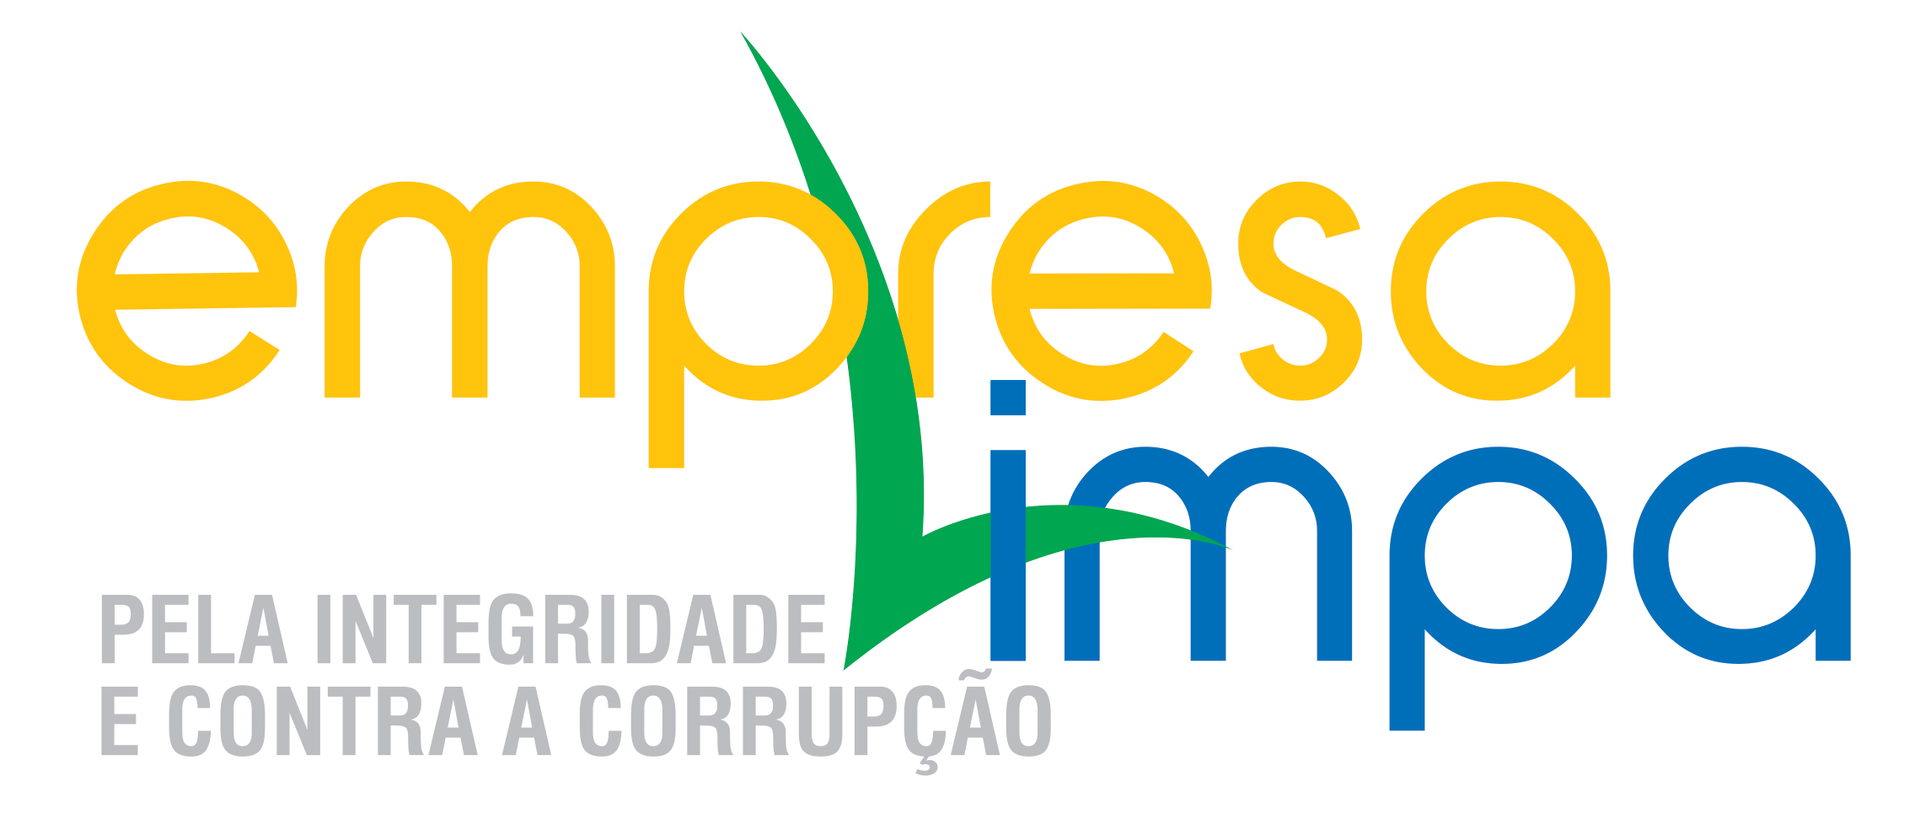 a logo for empresa limpa  de integridade e contra a corrupcao